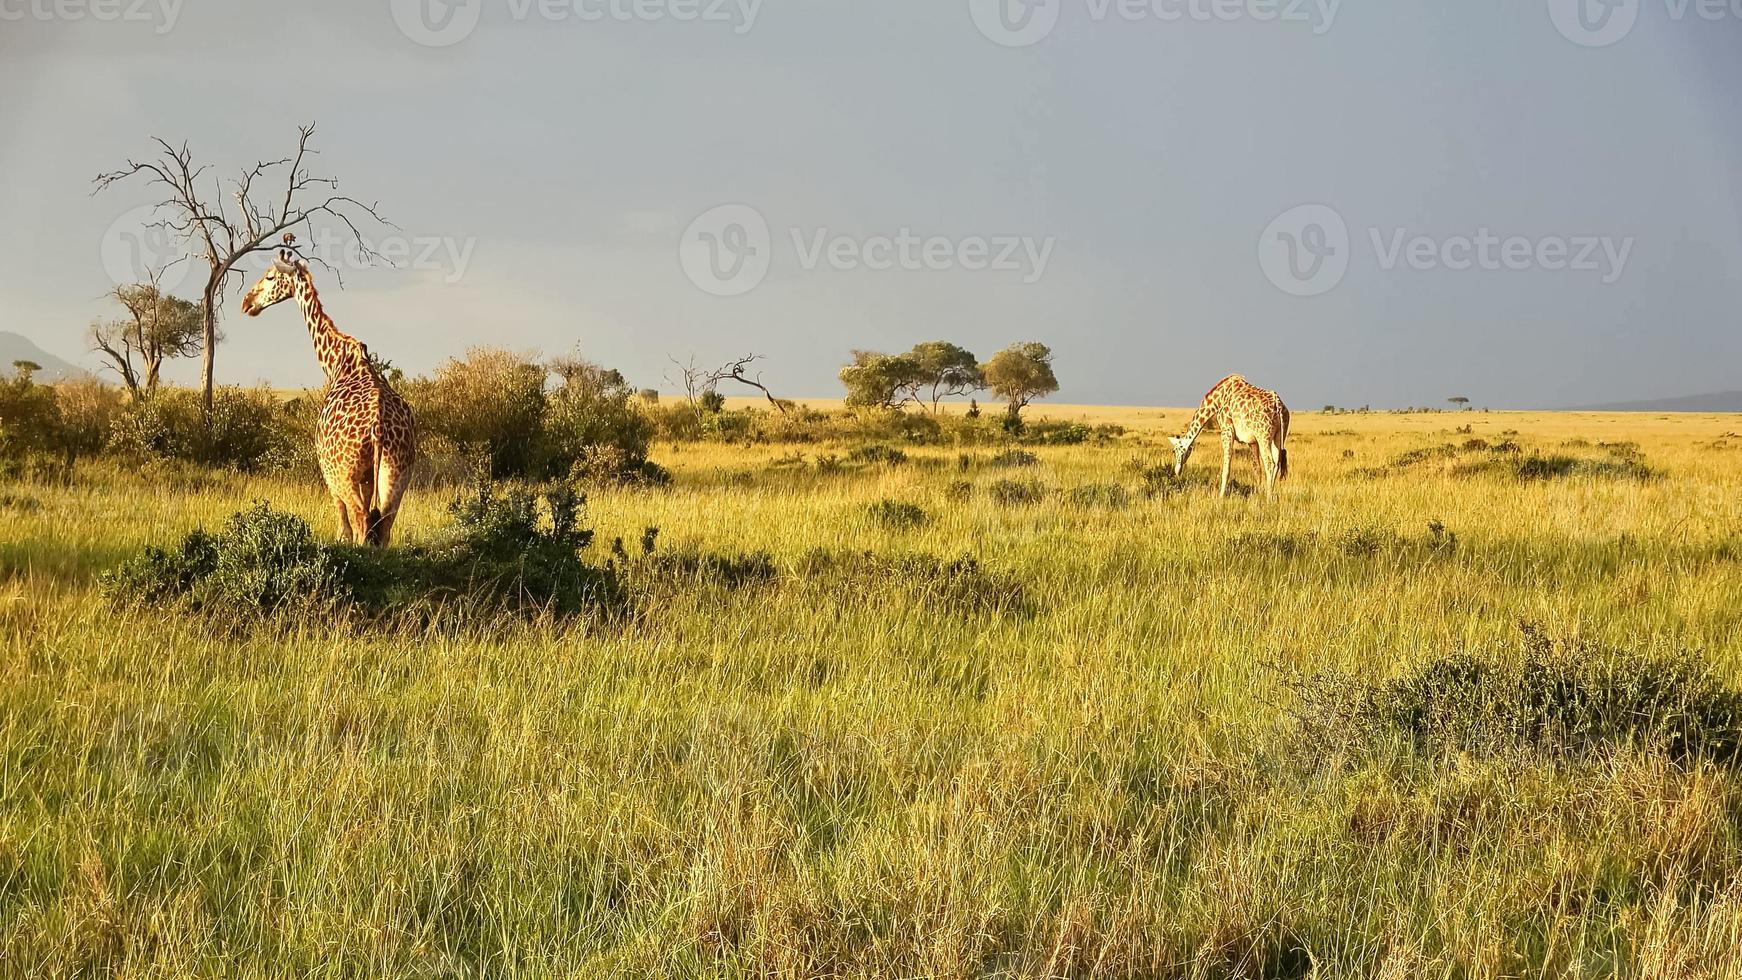 linda girafa na natureza selvagem da áfrica. foto